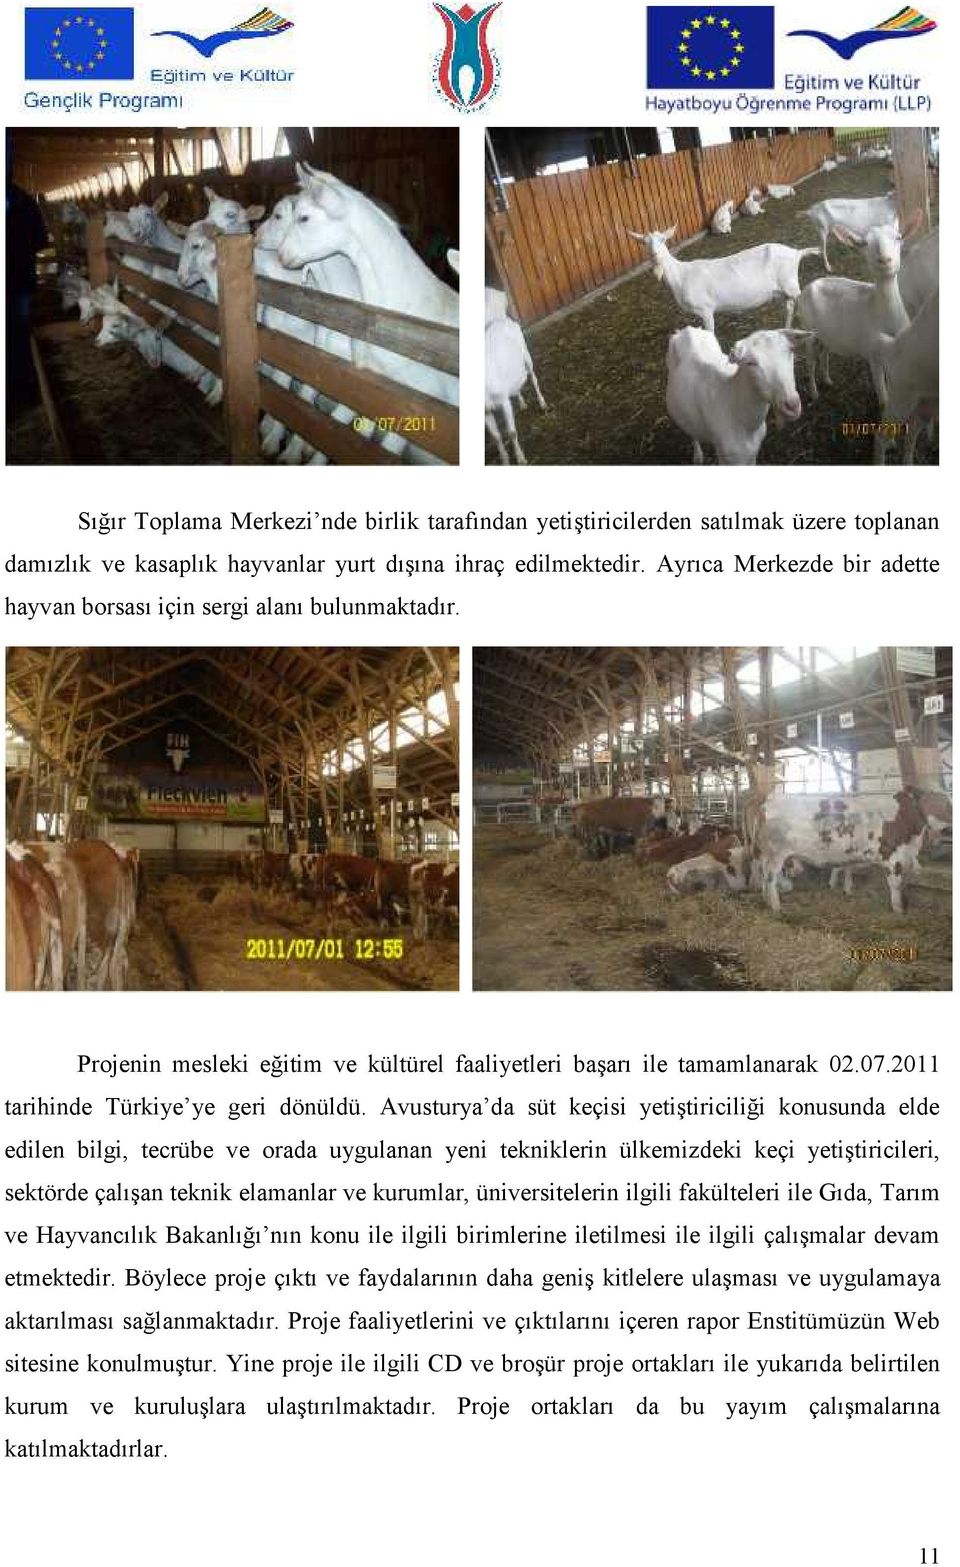 Avusturya da süt keçisi yetiştiriciliği konusunda elde edilen bilgi, tecrübe ve orada uygulanan yeni tekniklerin ülkemizdeki keçi yetiştiricileri, sektörde çalışan teknik elamanlar ve kurumlar,